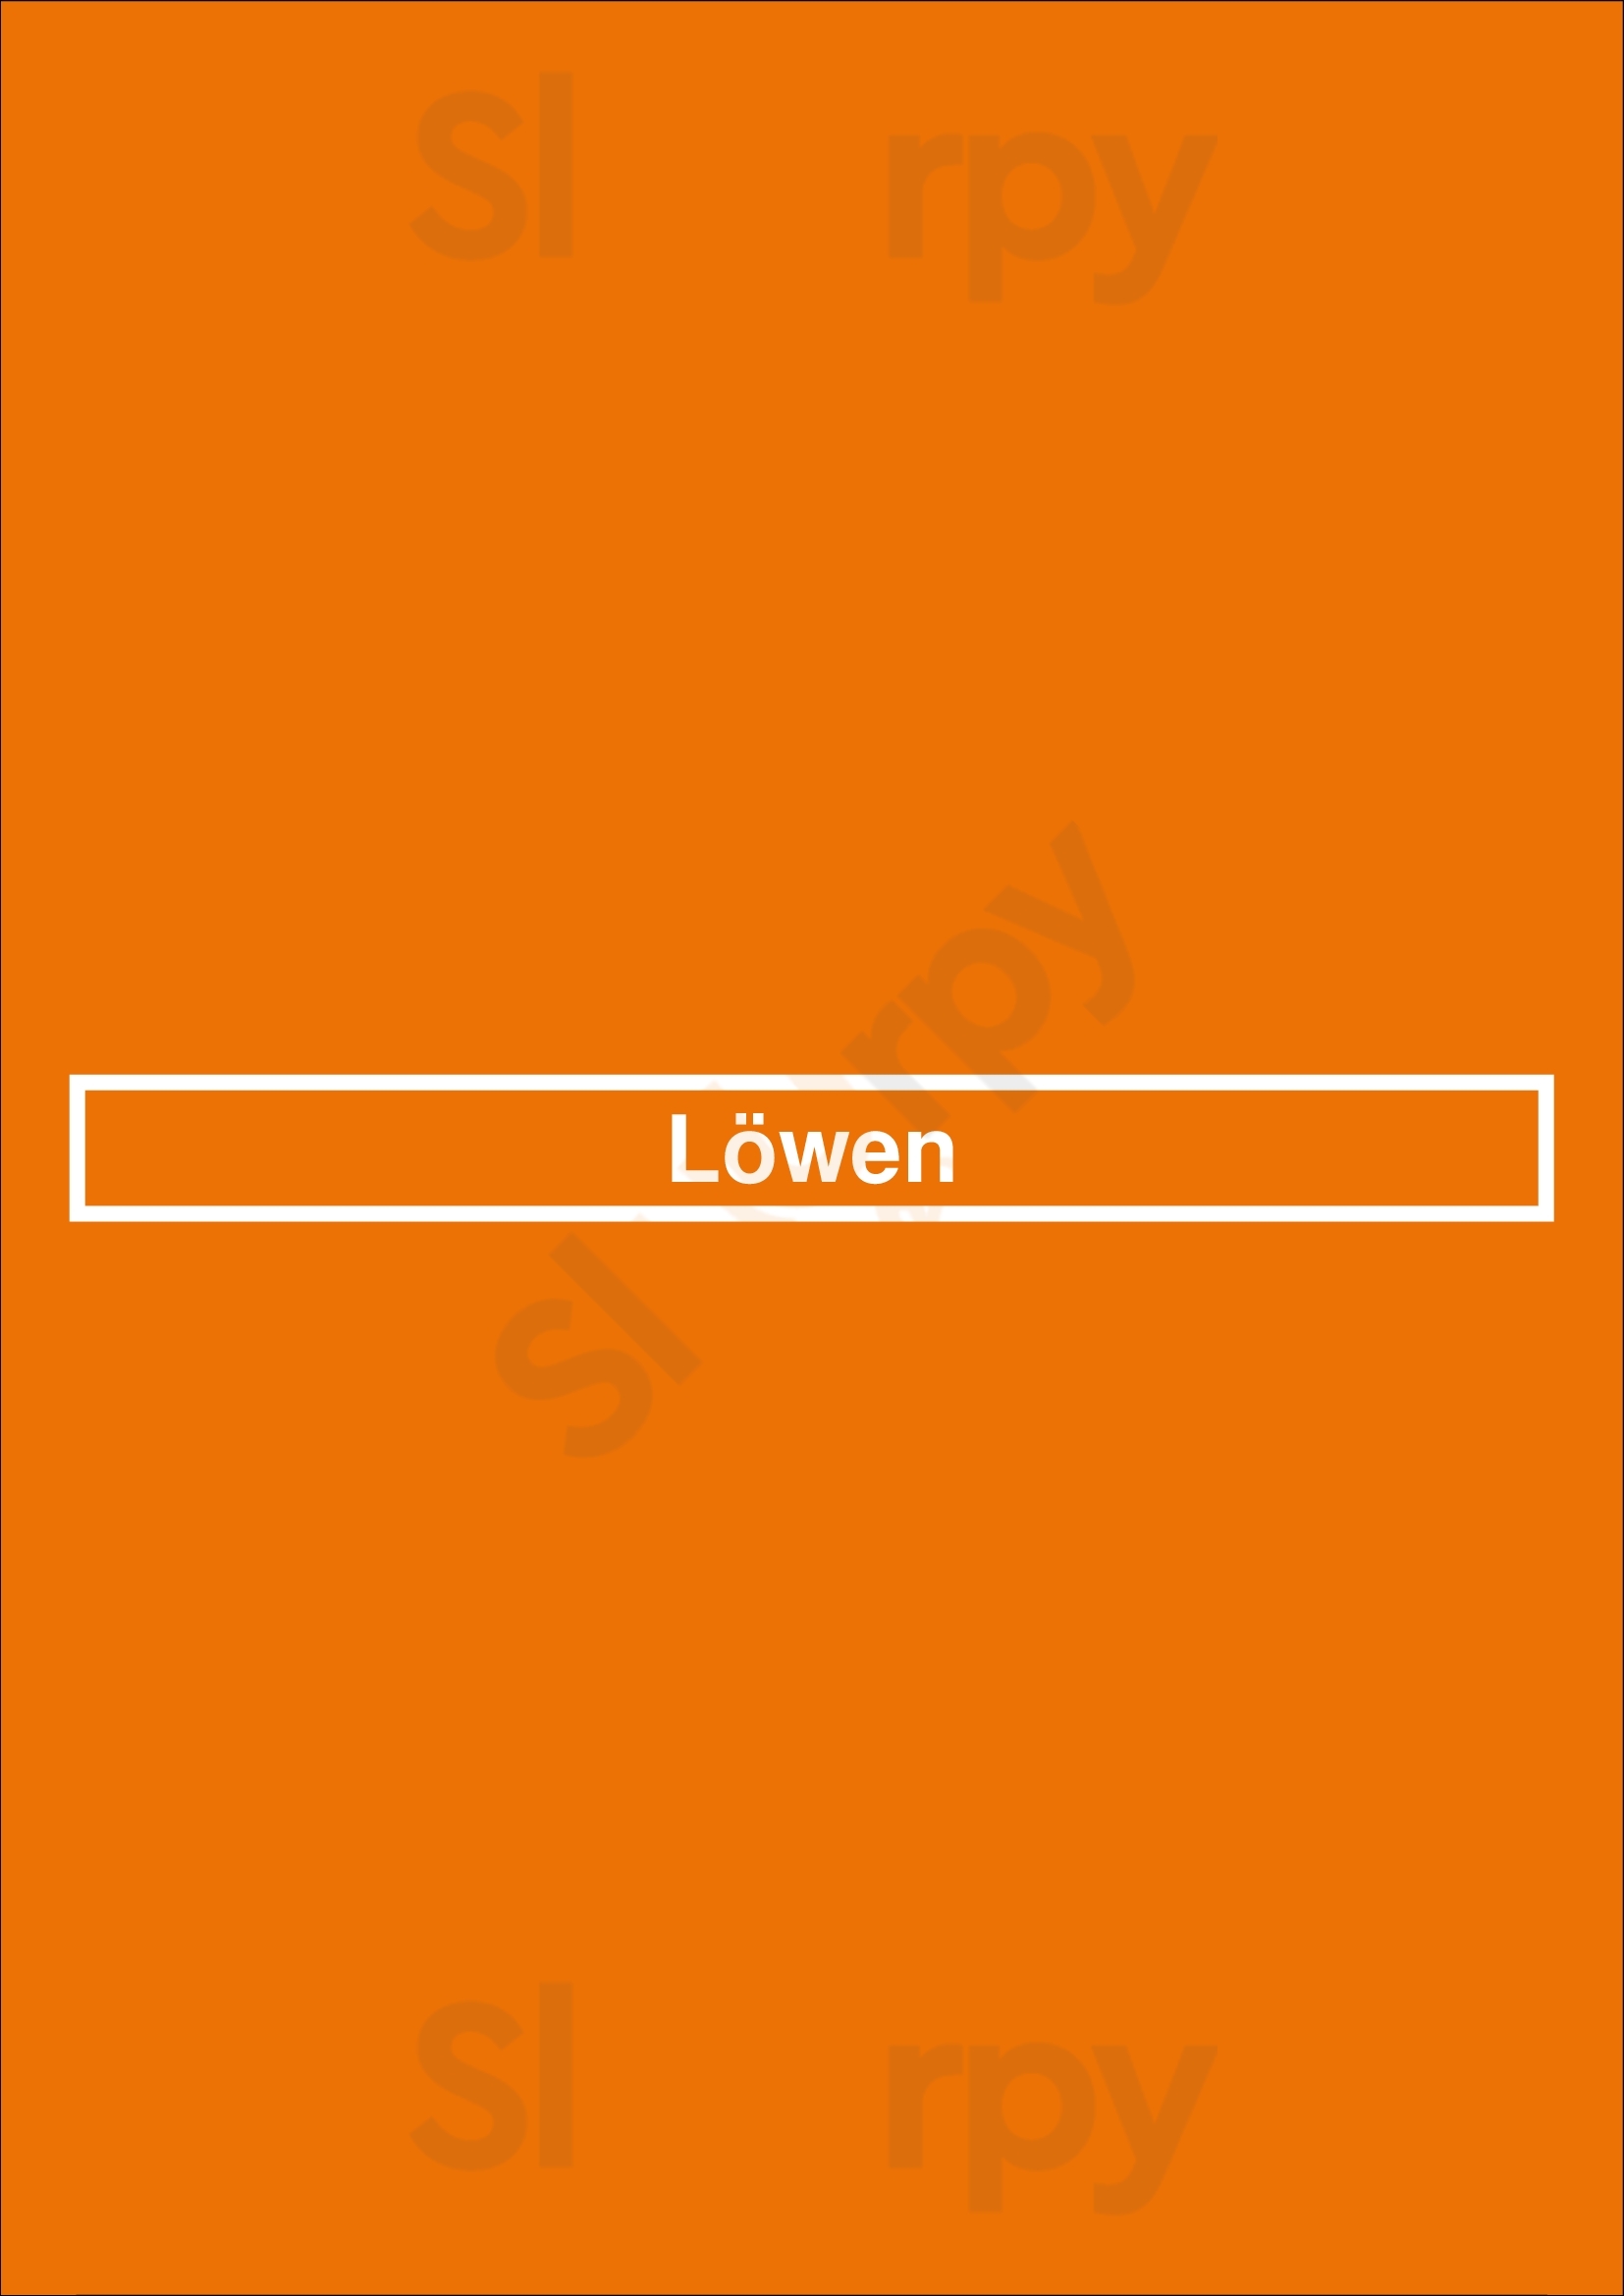 Löwen Bonn Menu - 1